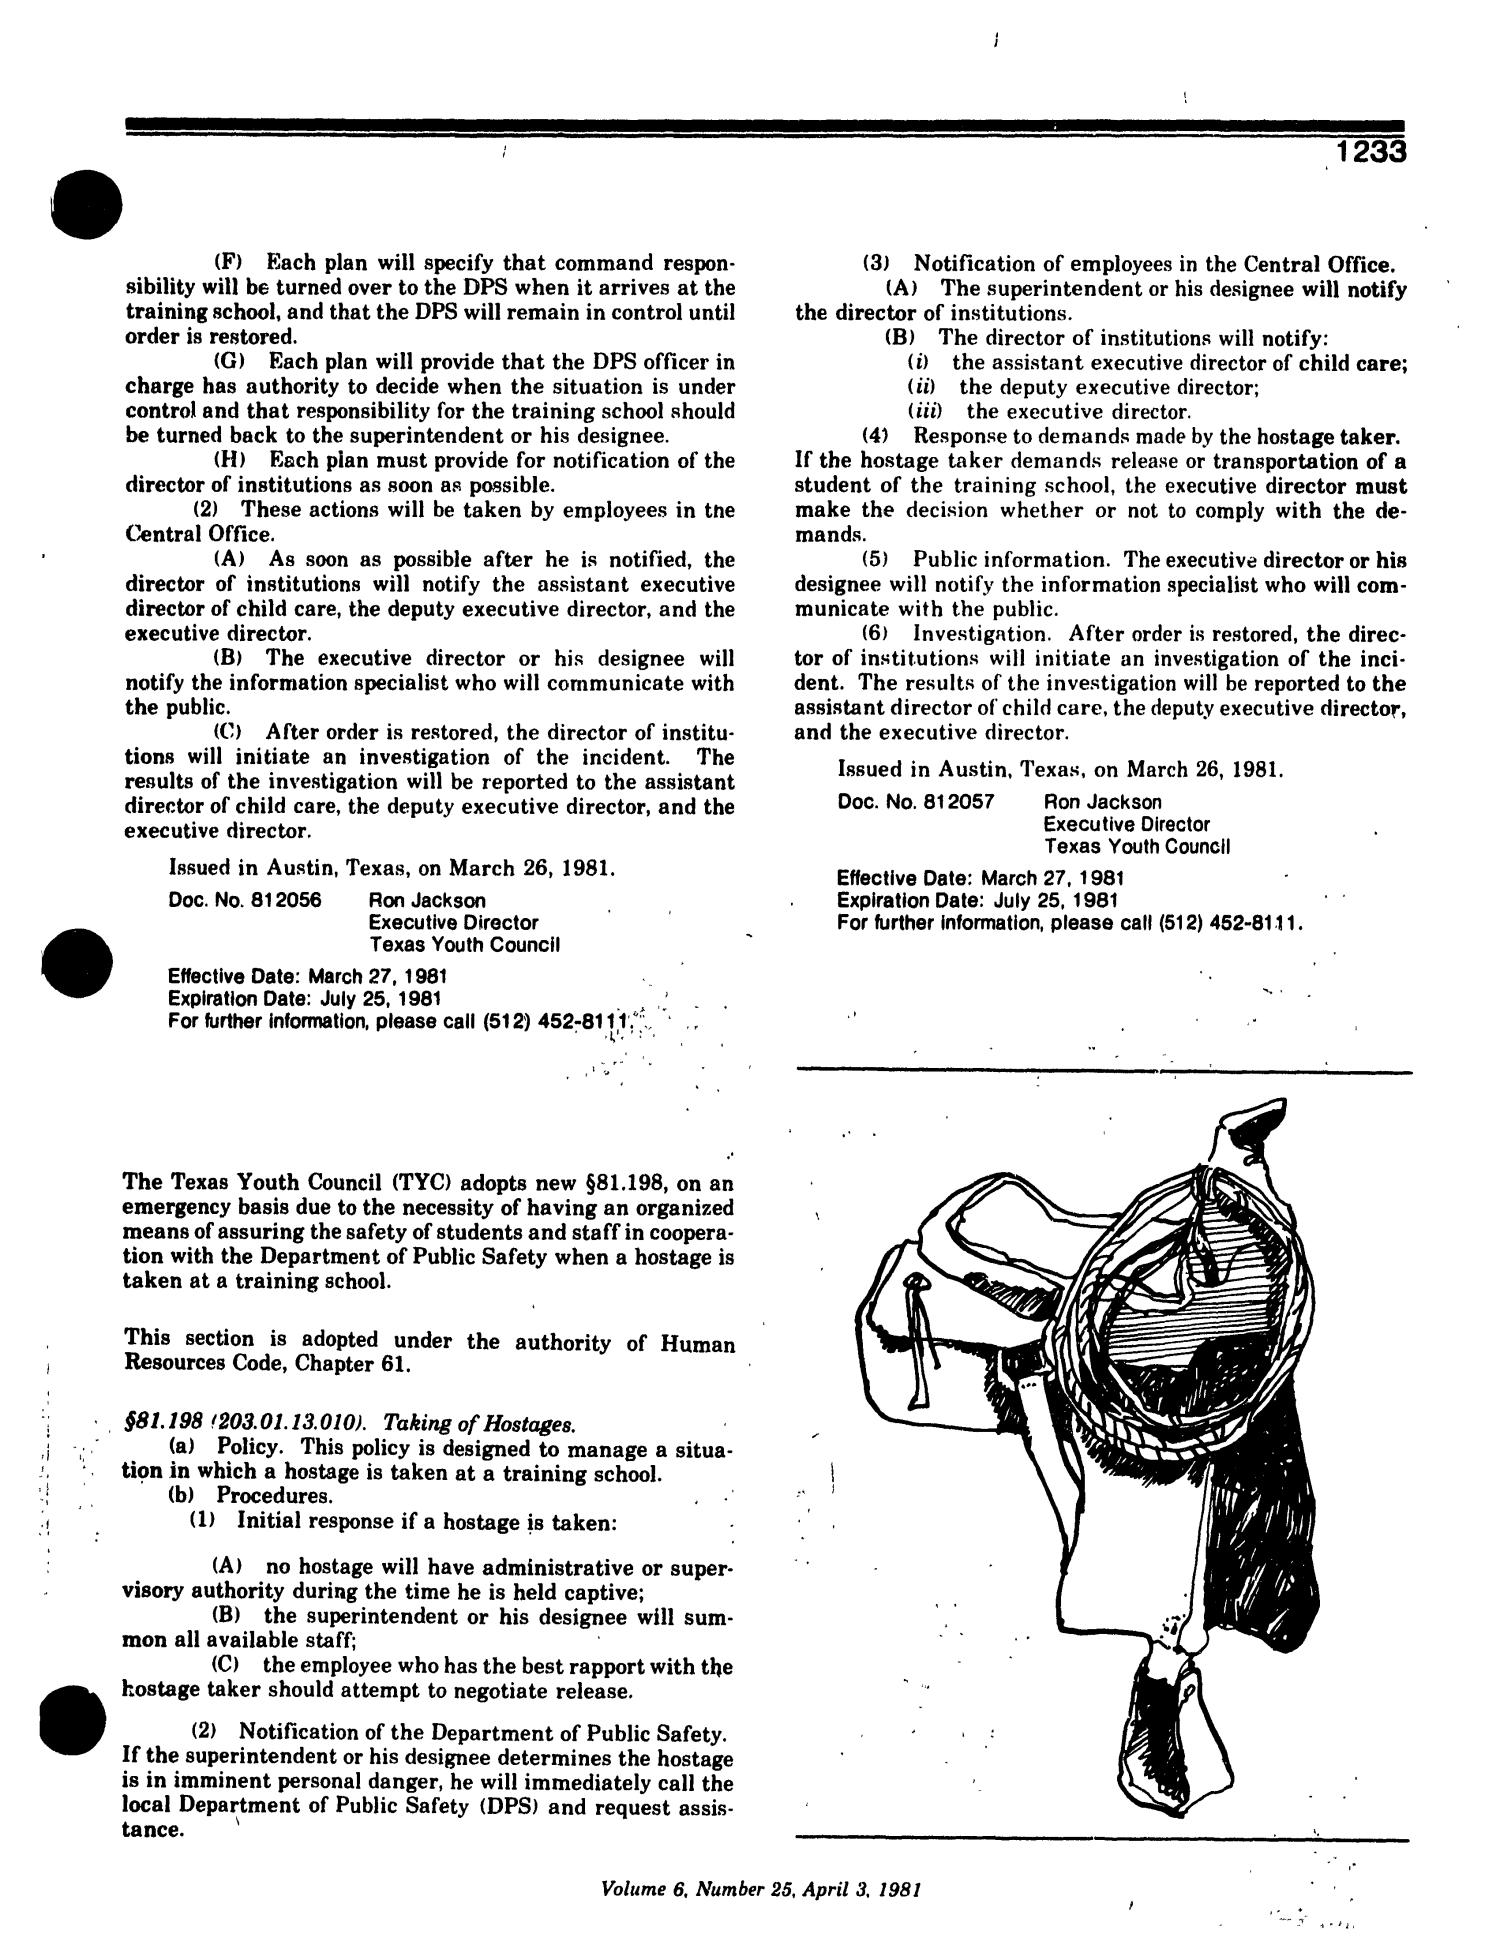 Texas Register, Volume 6, Number 25, Pages 1223-1276, April 3, 1981
                                                
                                                    1233
                                                